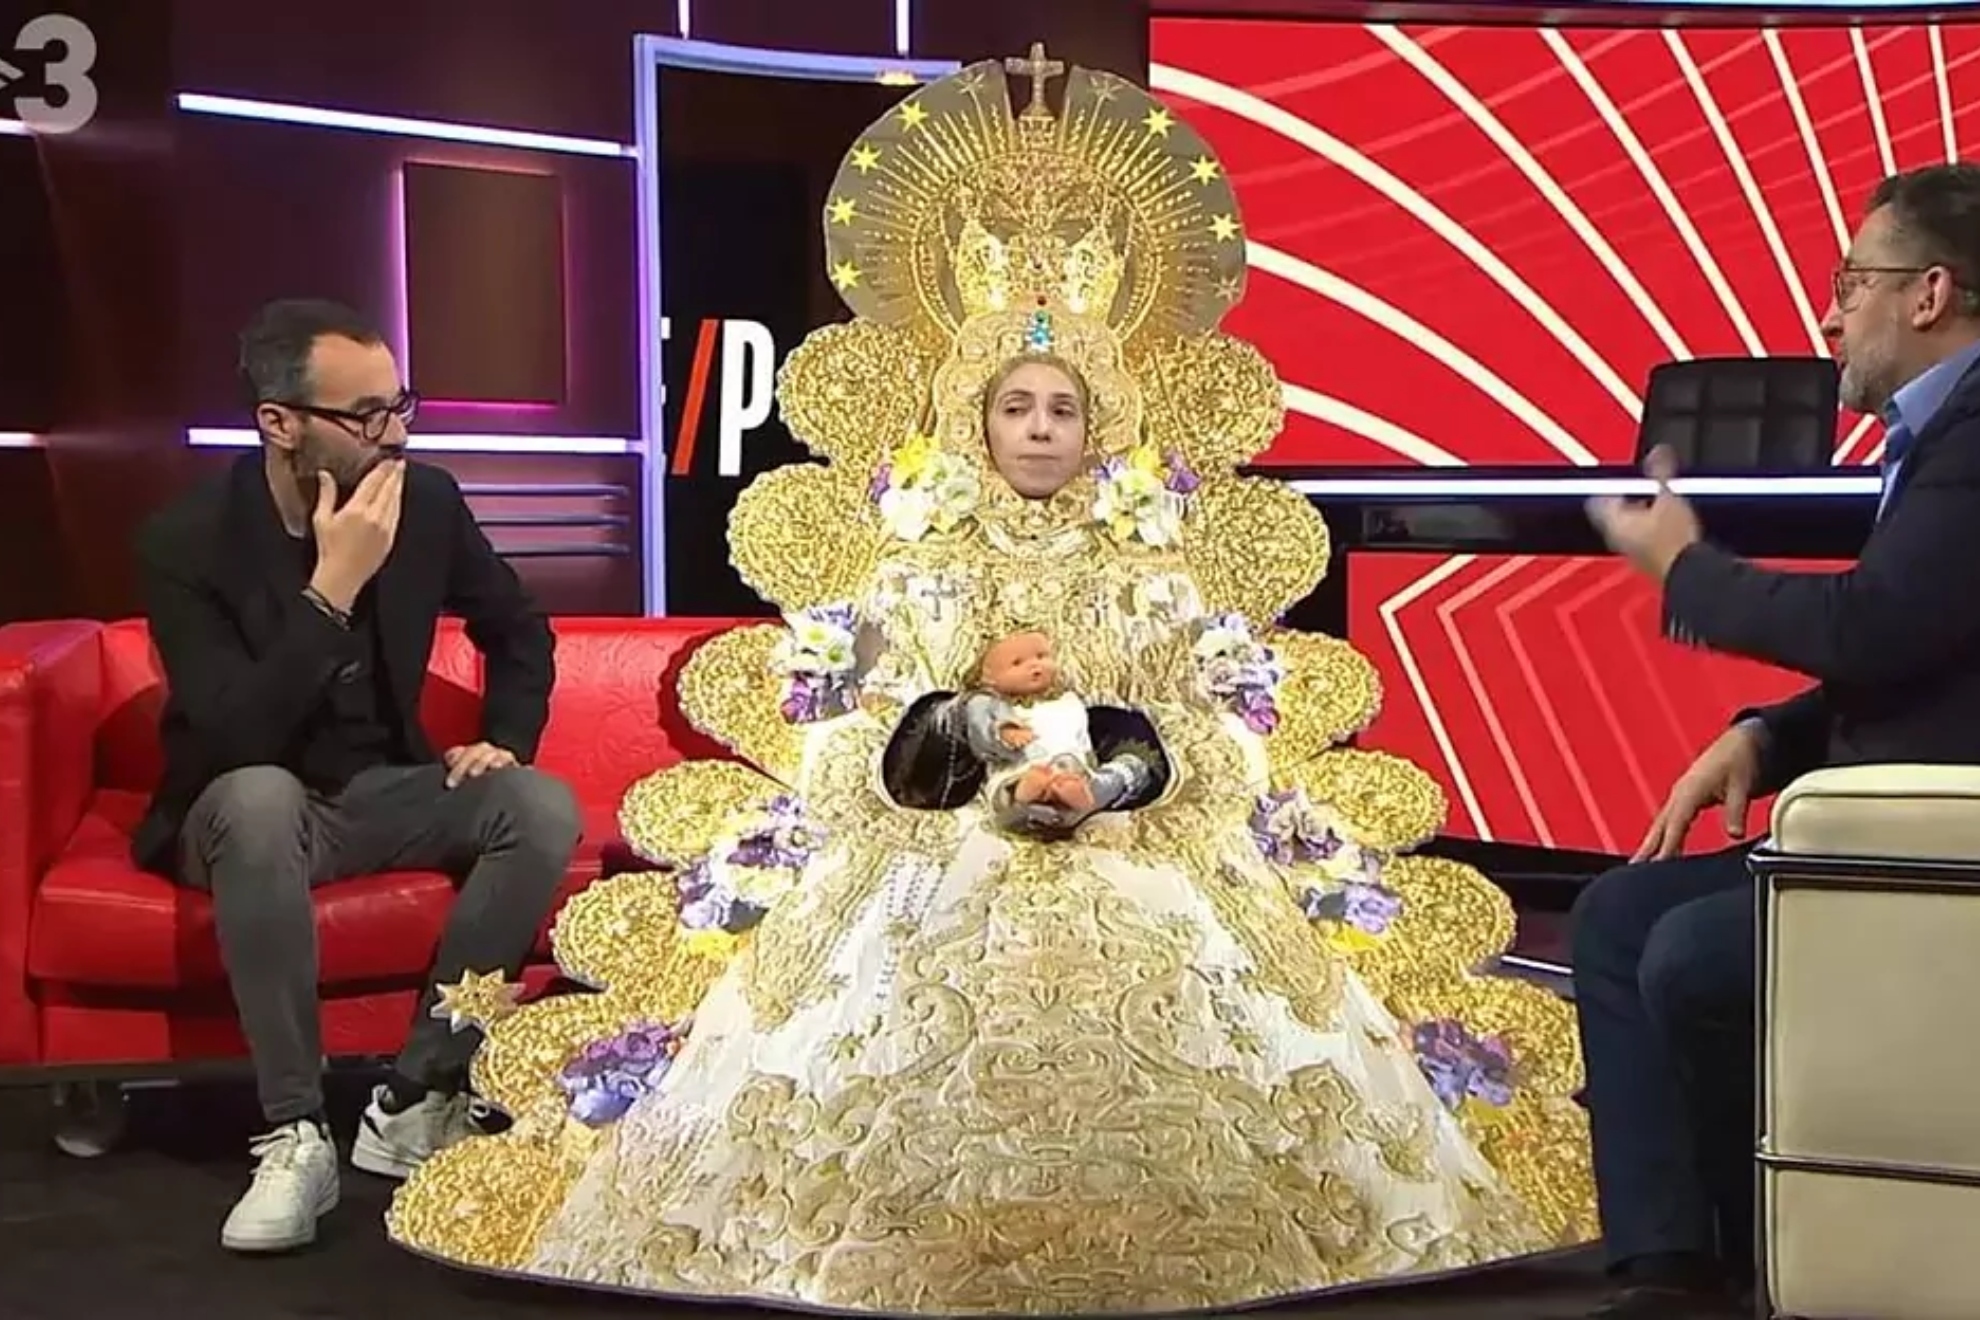 Judit Martn, que interpret a la Virgen del Roco en la 'gag' de TV3, se pronuncia tras la polmica